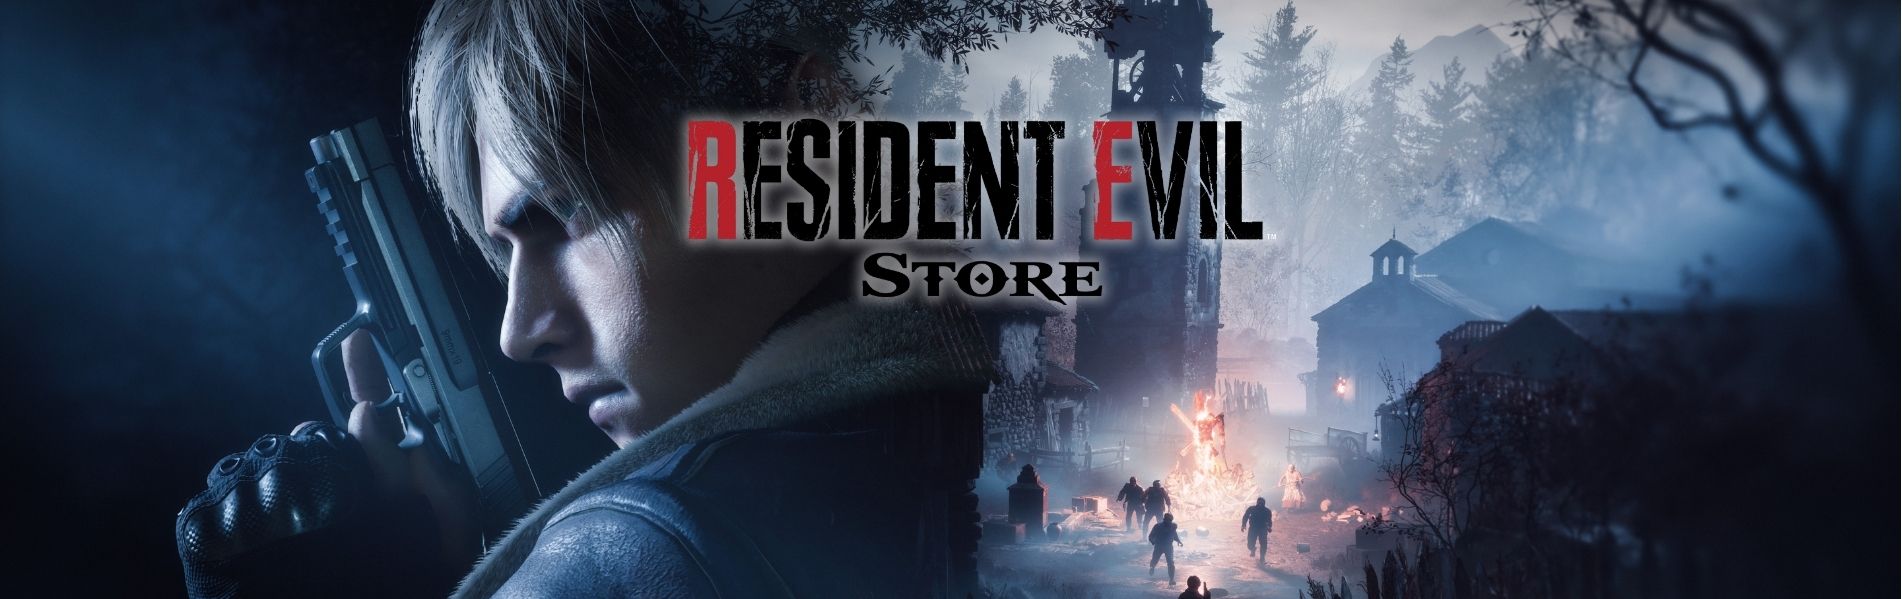 Resident Evil Store Banner 1